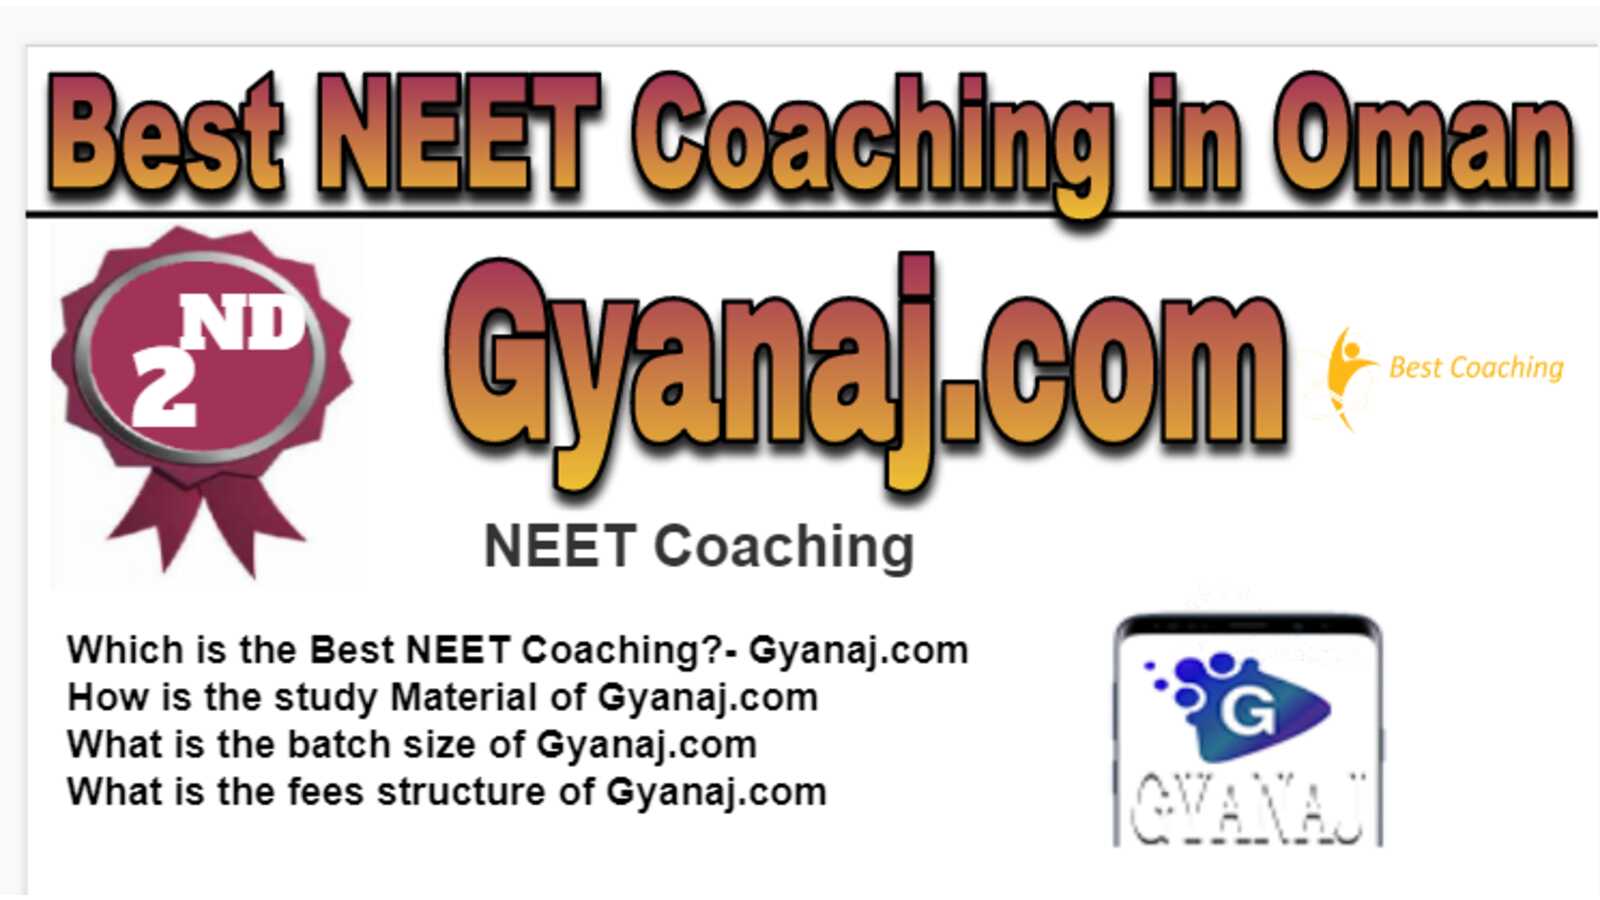 Rank 2 Best NEET Coaching in Oman